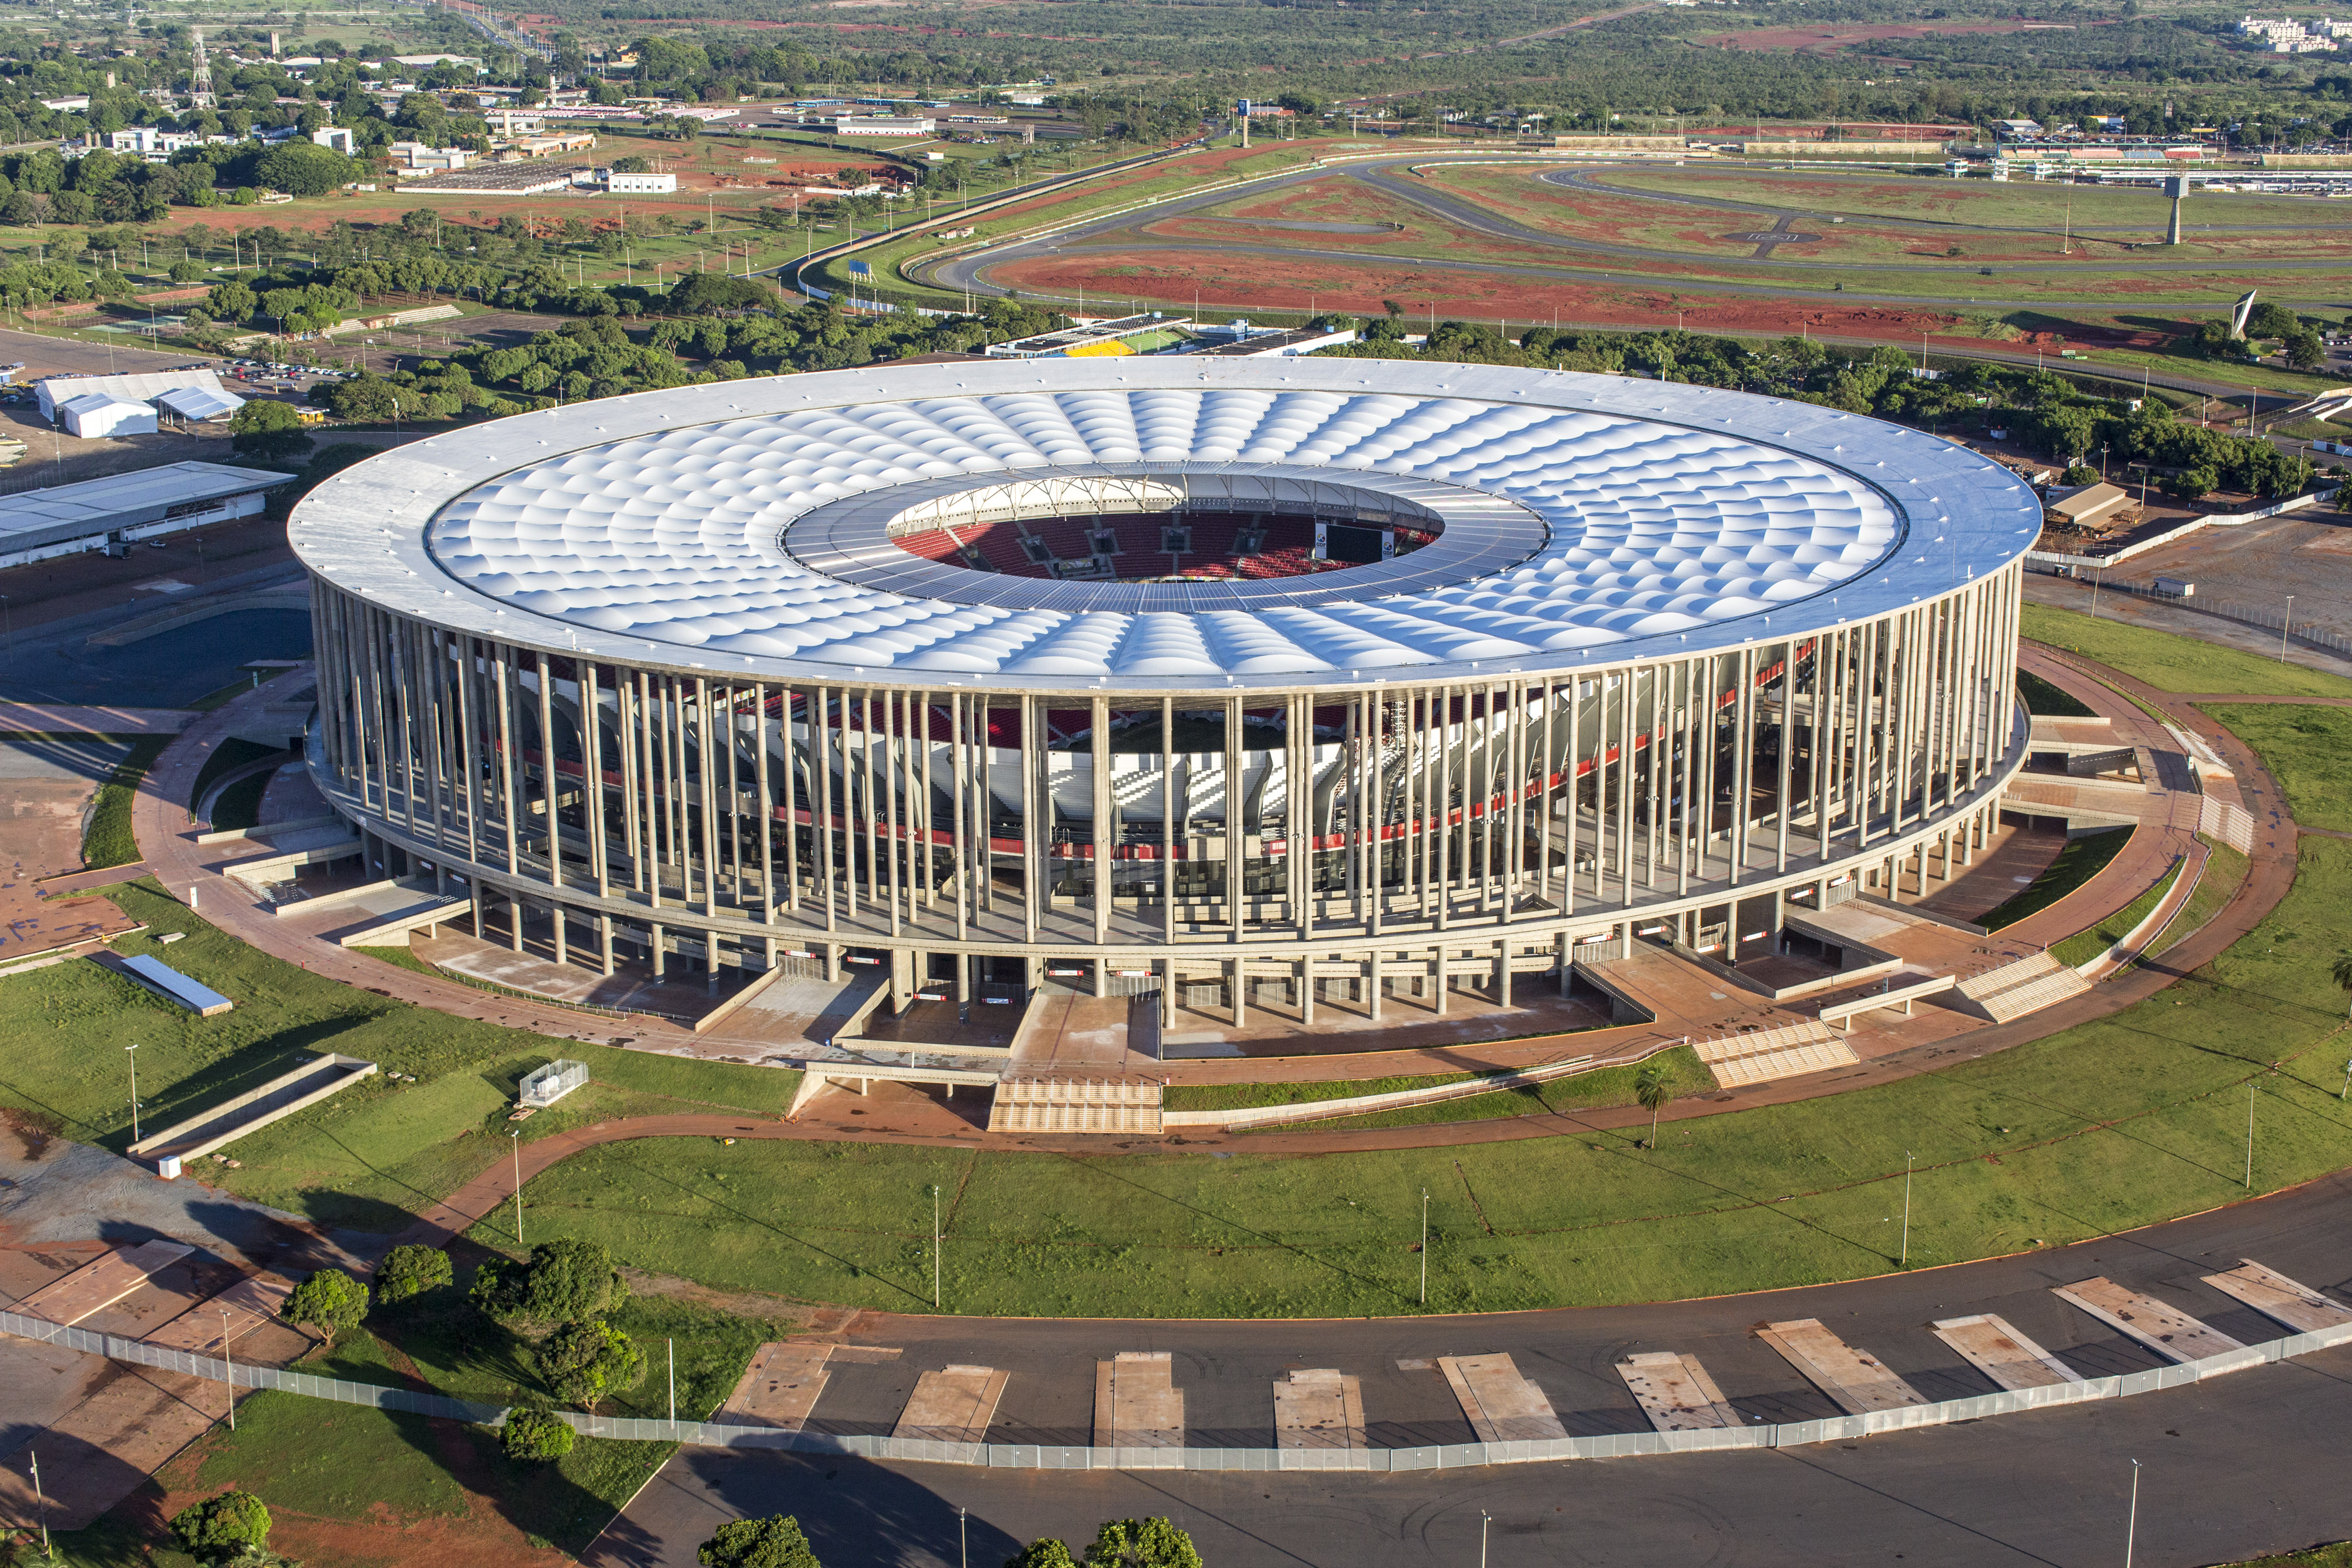 Estadio Mané Garrincha